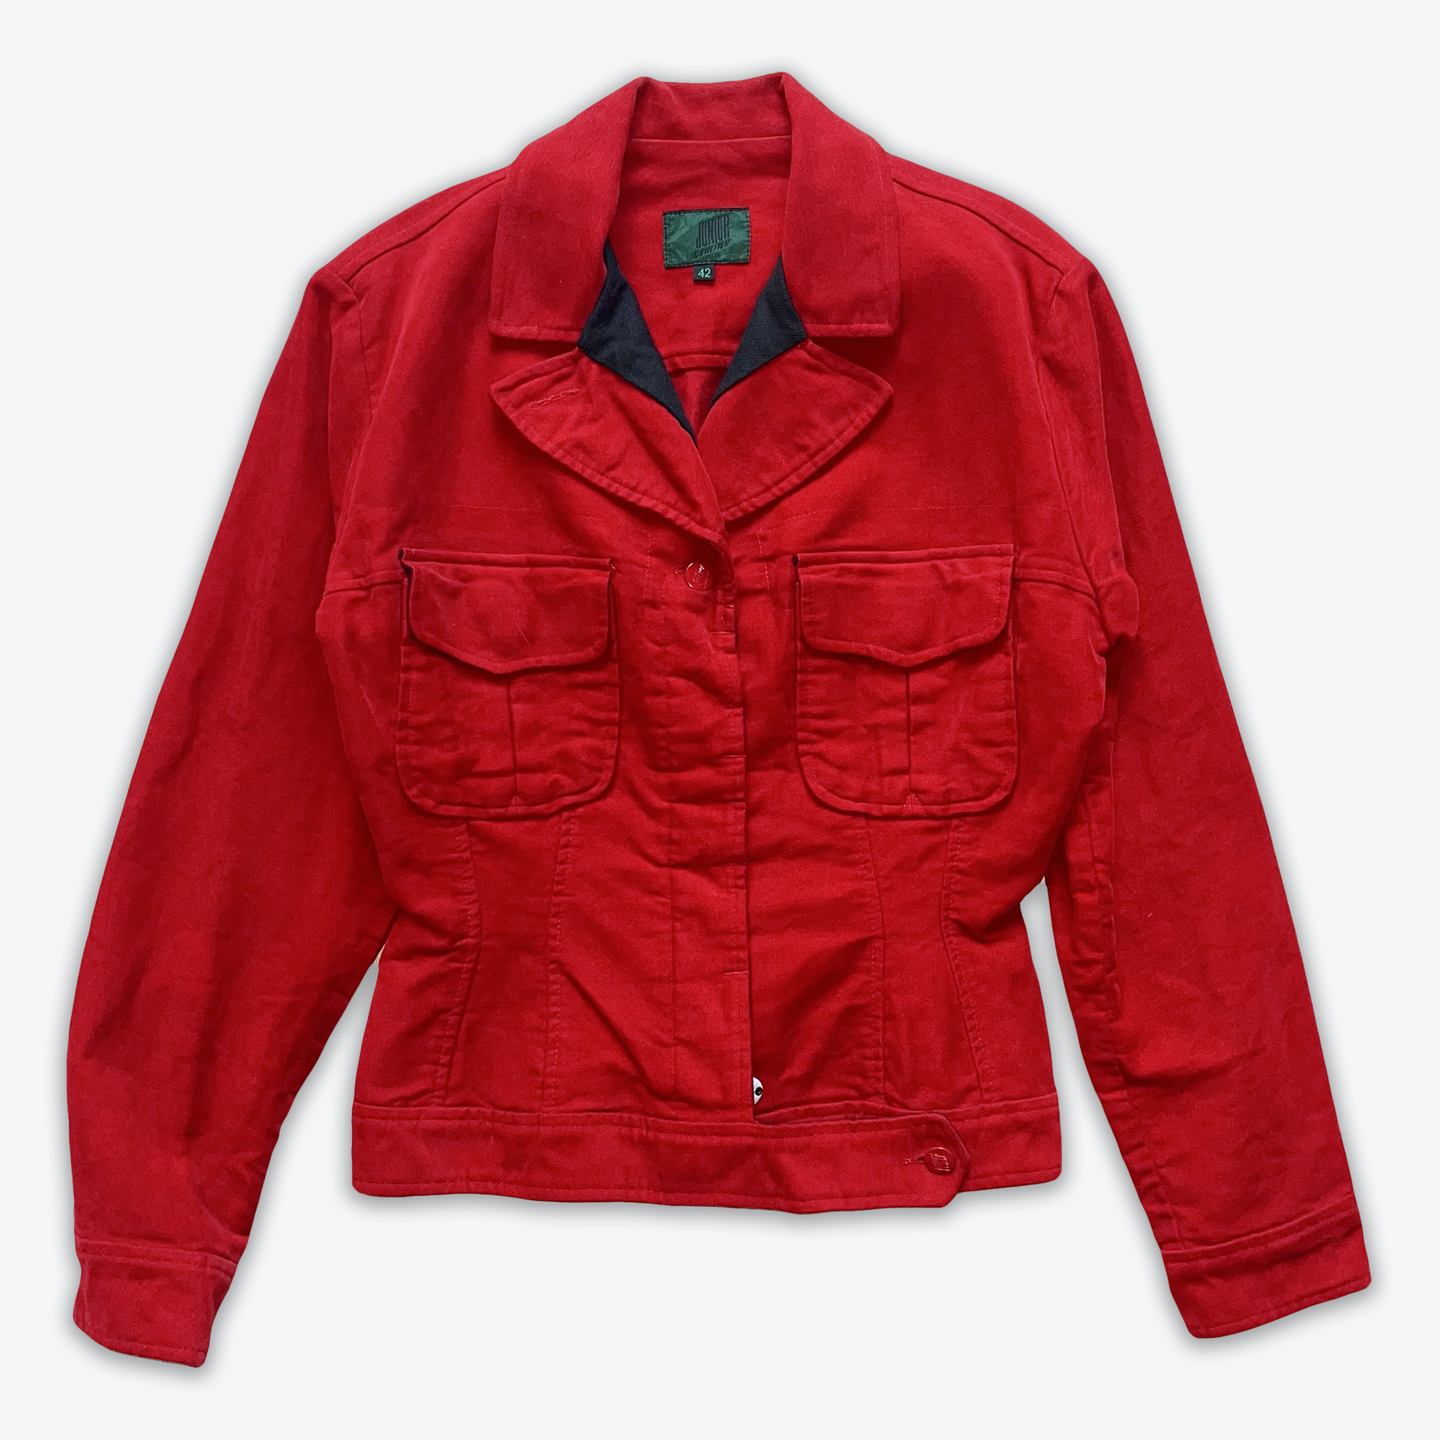 Jean Paul Gaultier Jacket (Red)